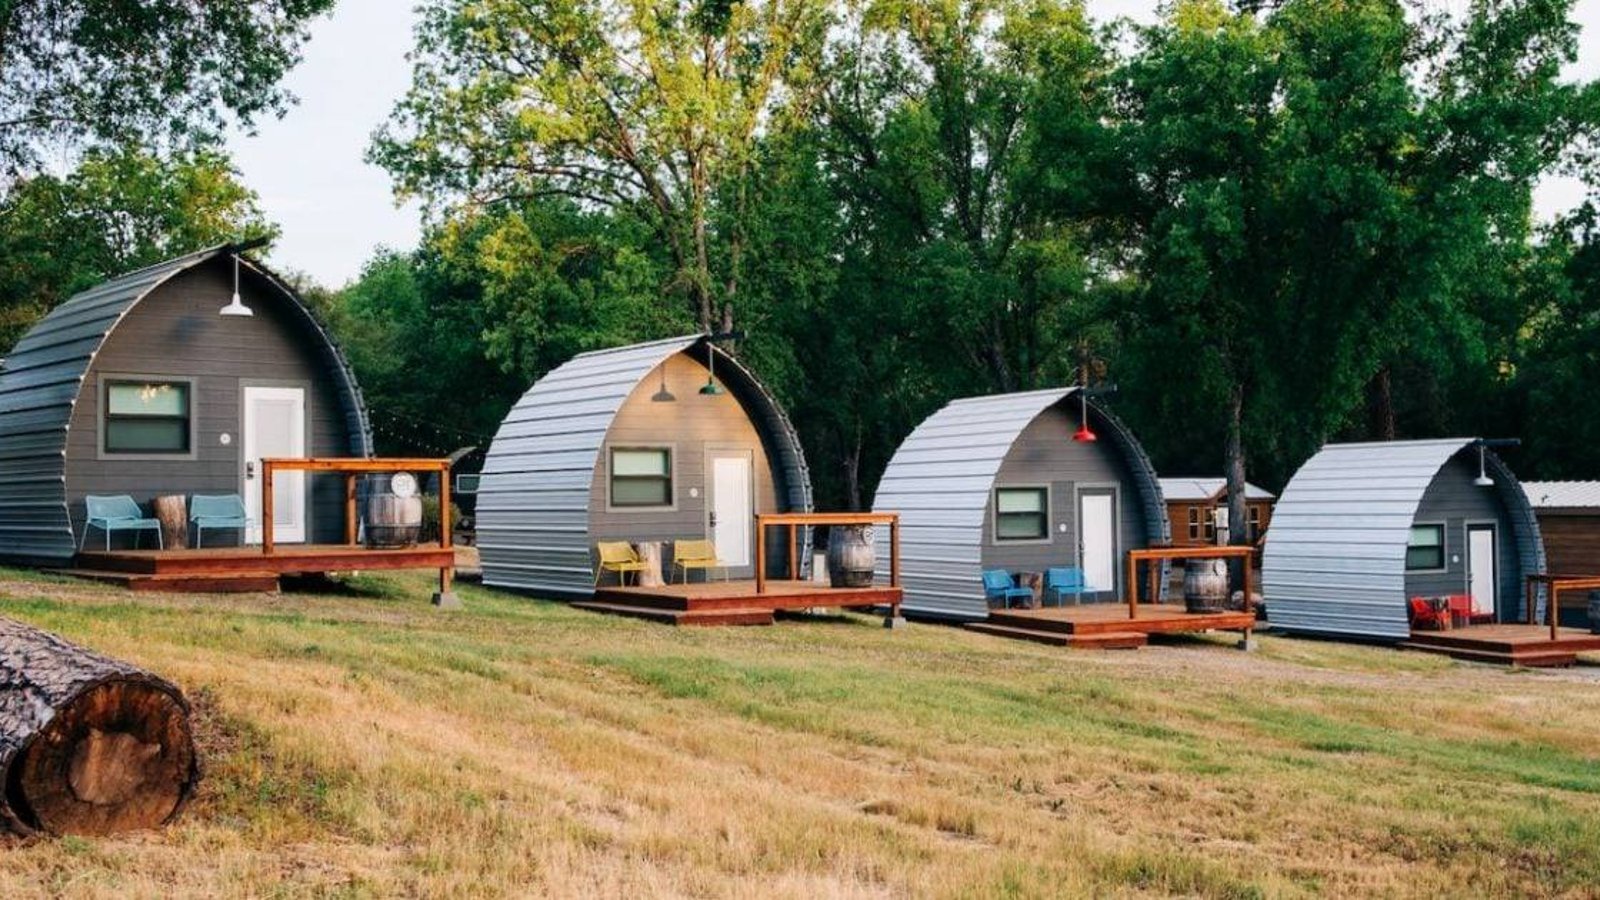 Les kits de cabine arquée facilitent plus que jamais la construction de la petite maison de vos rêves pour moins de 2 000 $